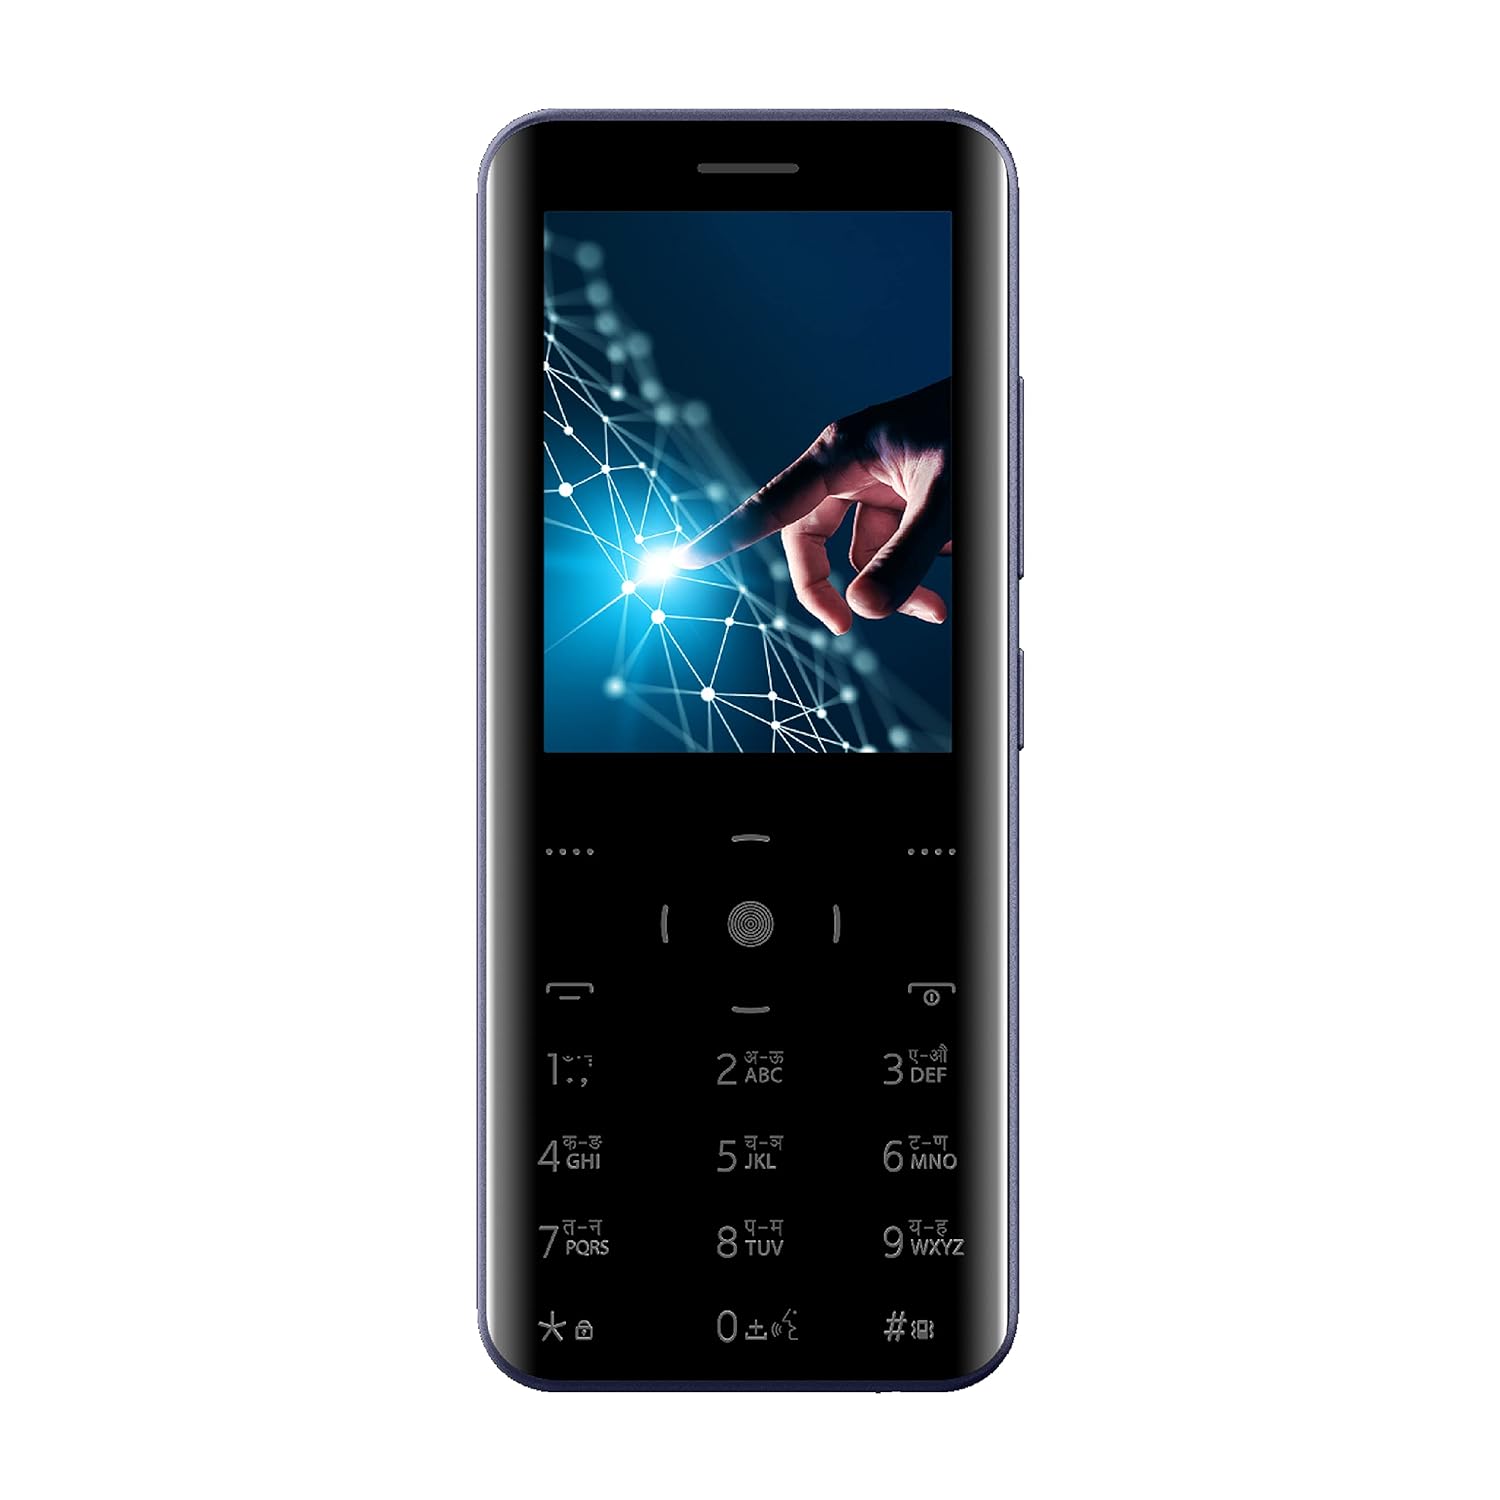 Мобильный телефон ITEL Magic 3, 2.8" 320x240 QVGA, 8Mb RAM, 8Mb, BT, 2-Sim, 1500 мА·ч, micro-USB, черный (it6350 Black)